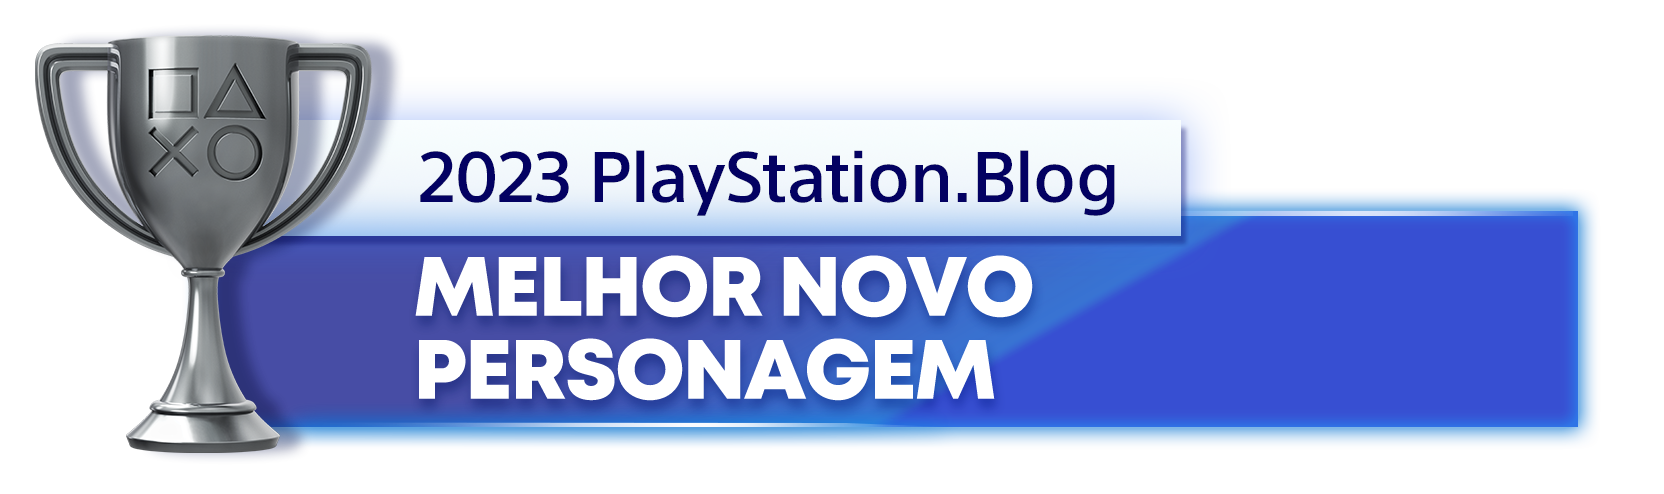  "Troféu de Prata para o vencedor da categoria Melhor Personagem Novo de 2023 do Blog PlayStation"